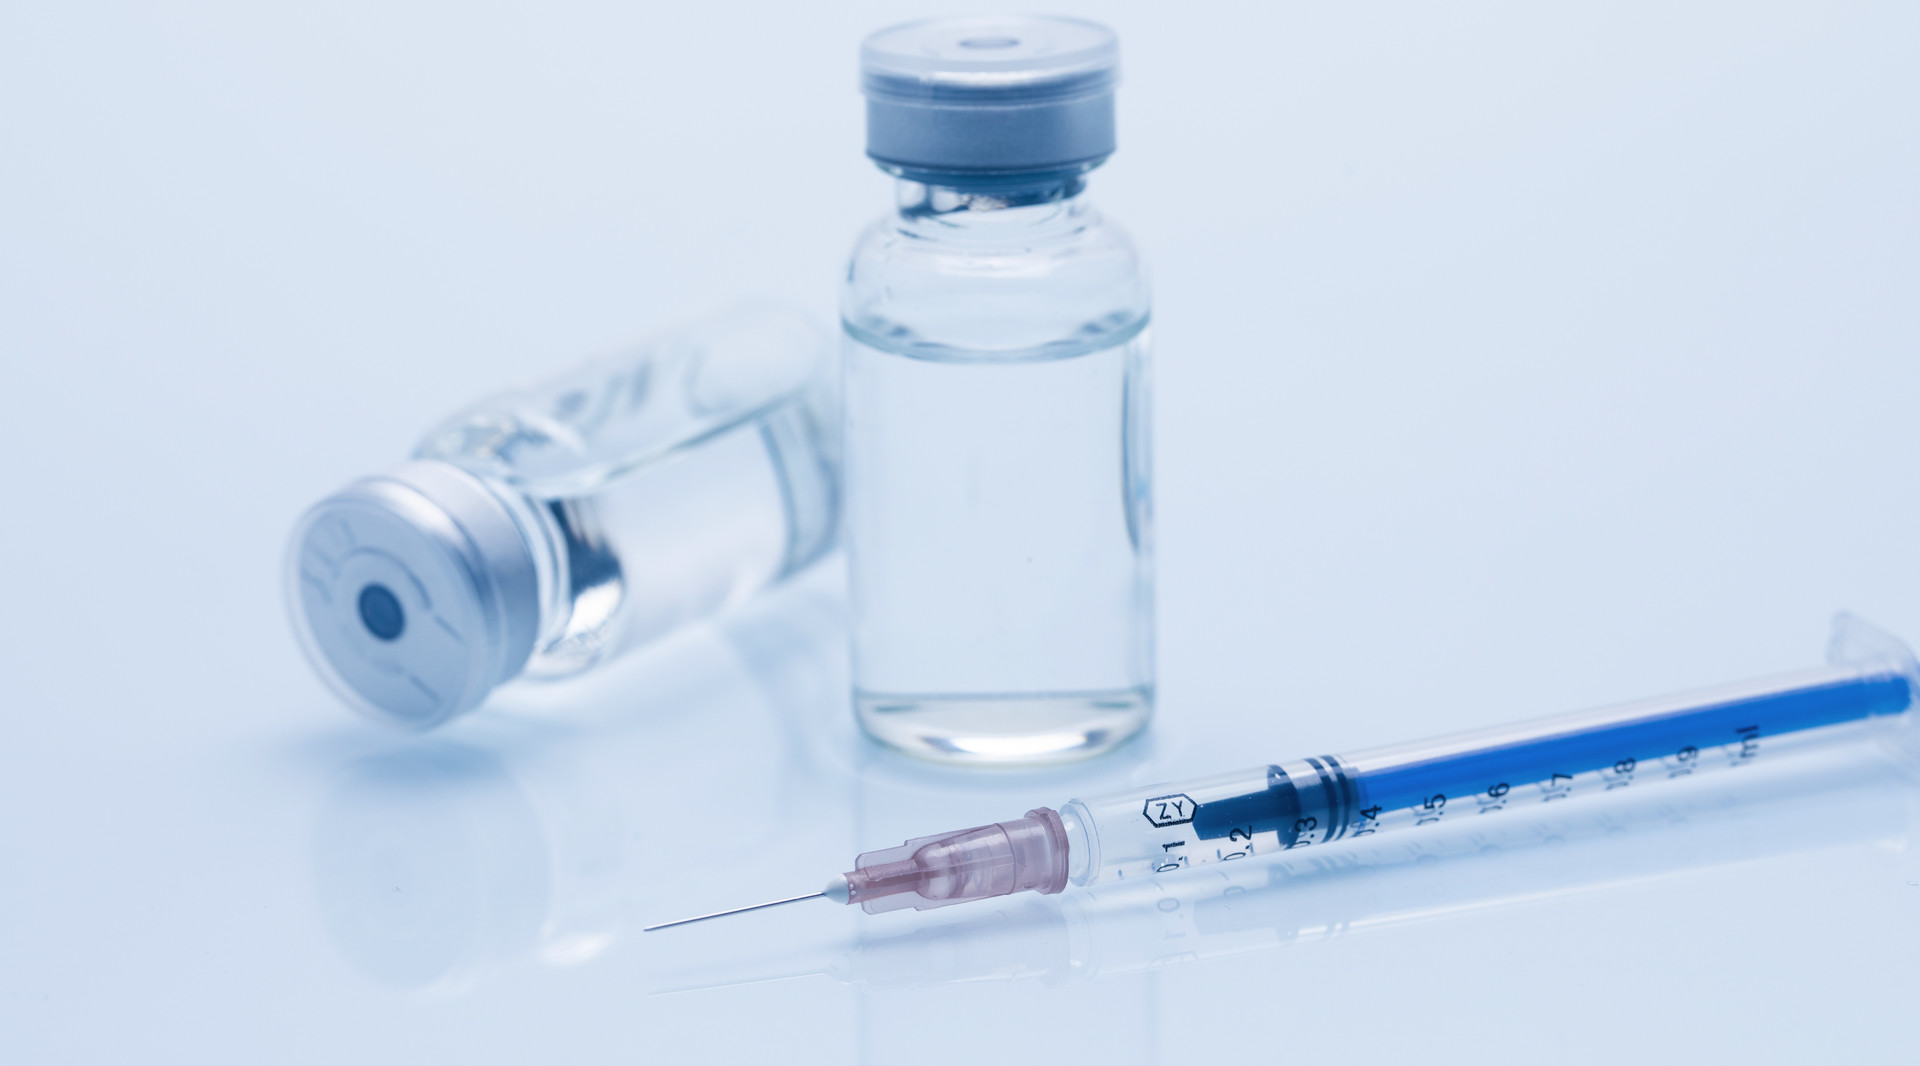 狂犬疫苗是终身免疫吗